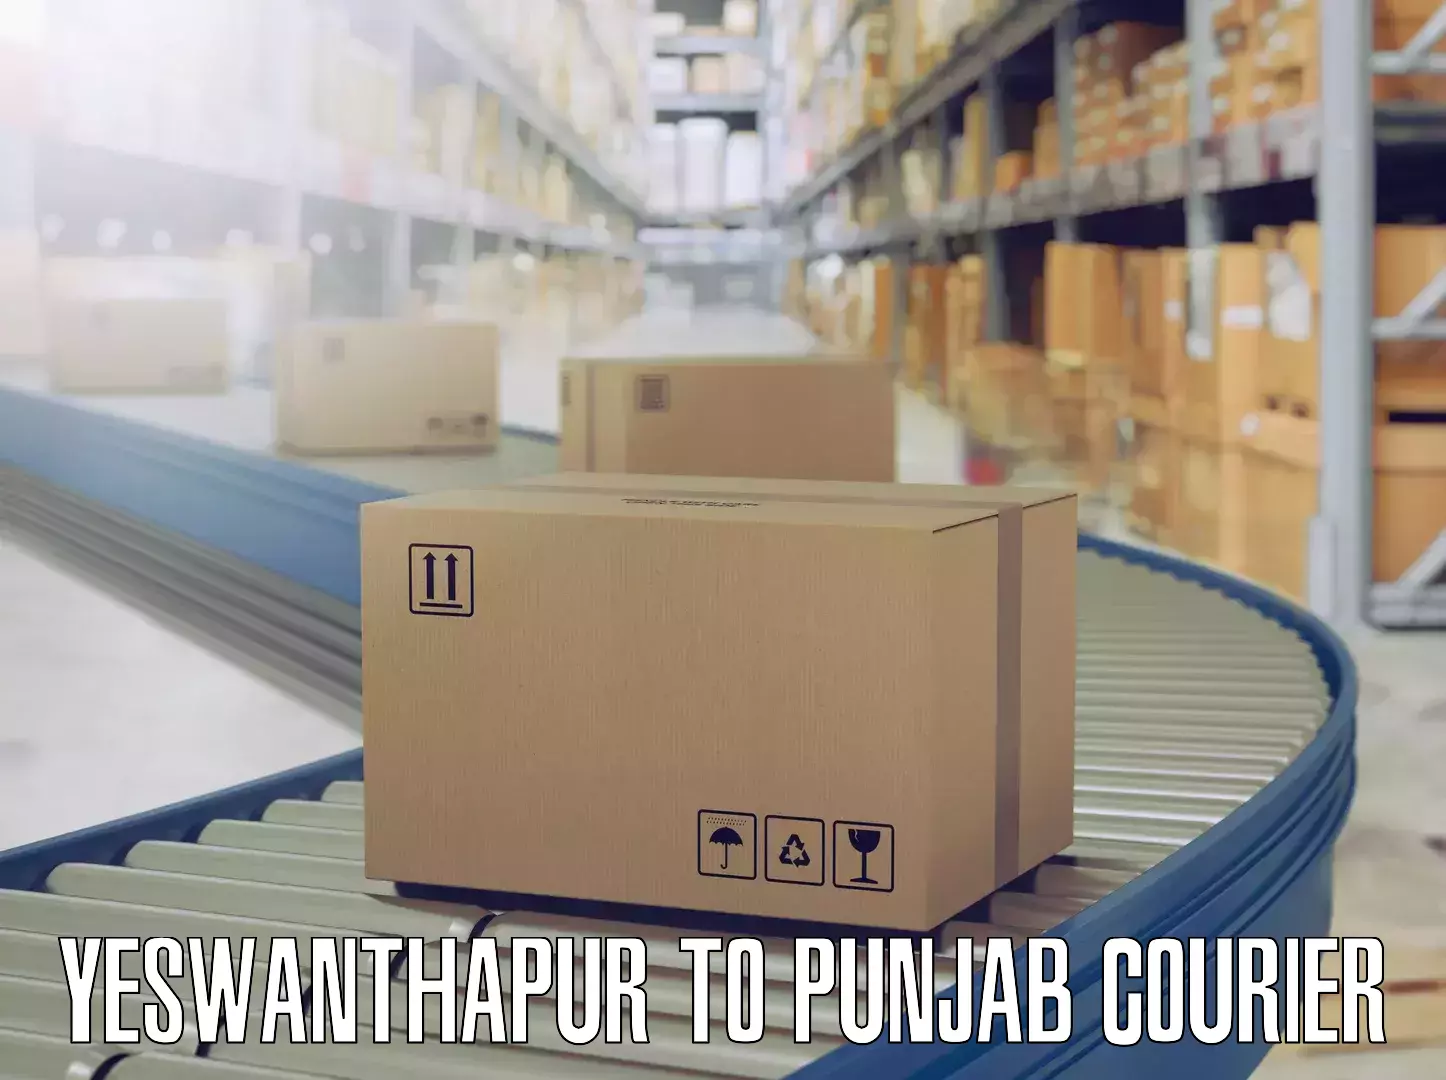 Furniture moving service Yeswanthapur to Punjab